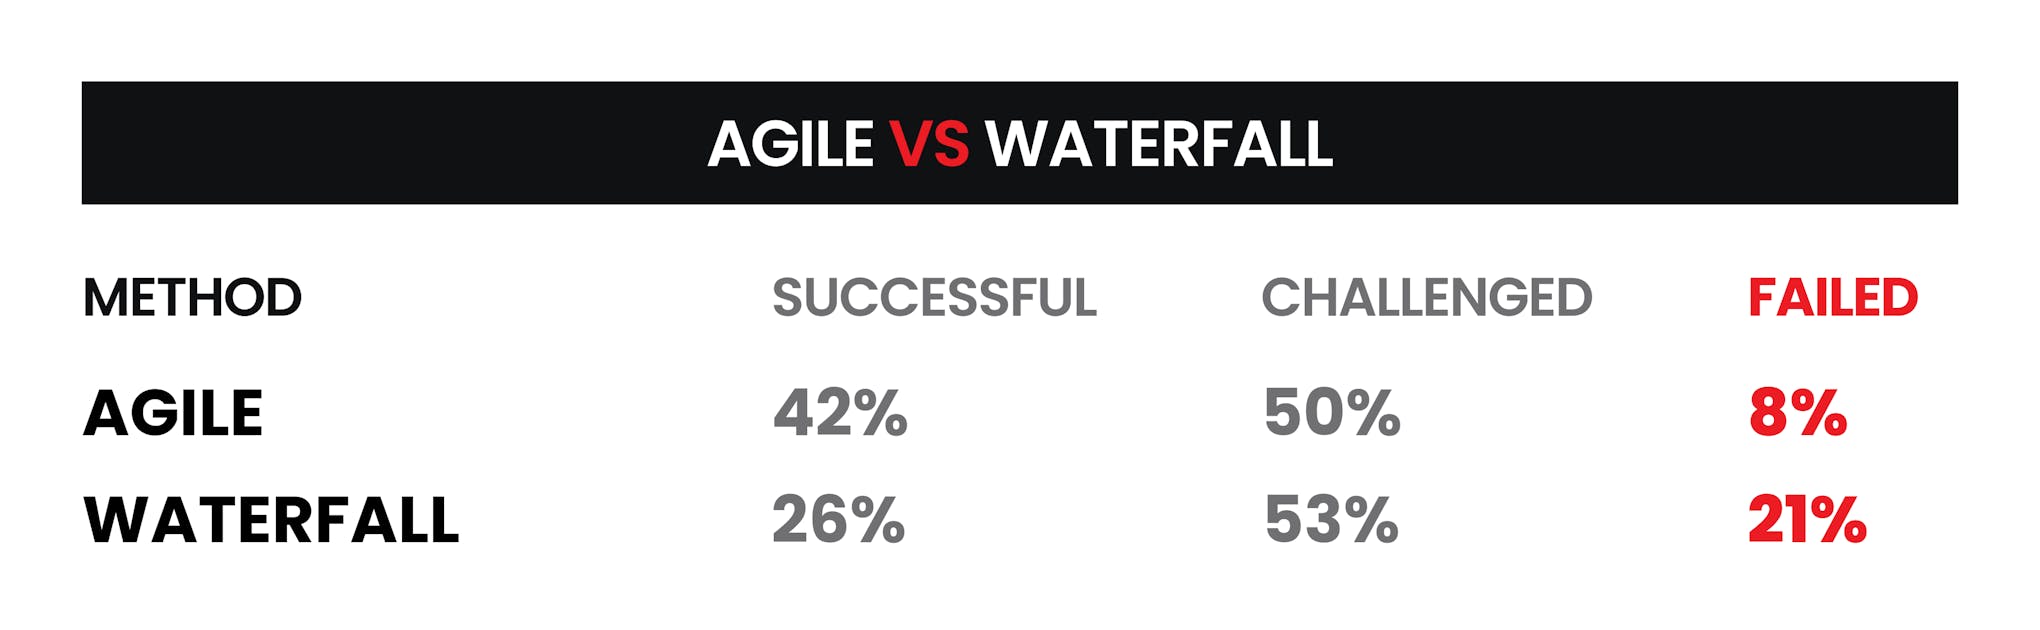 Agile vs Waterfall Methods Rate.